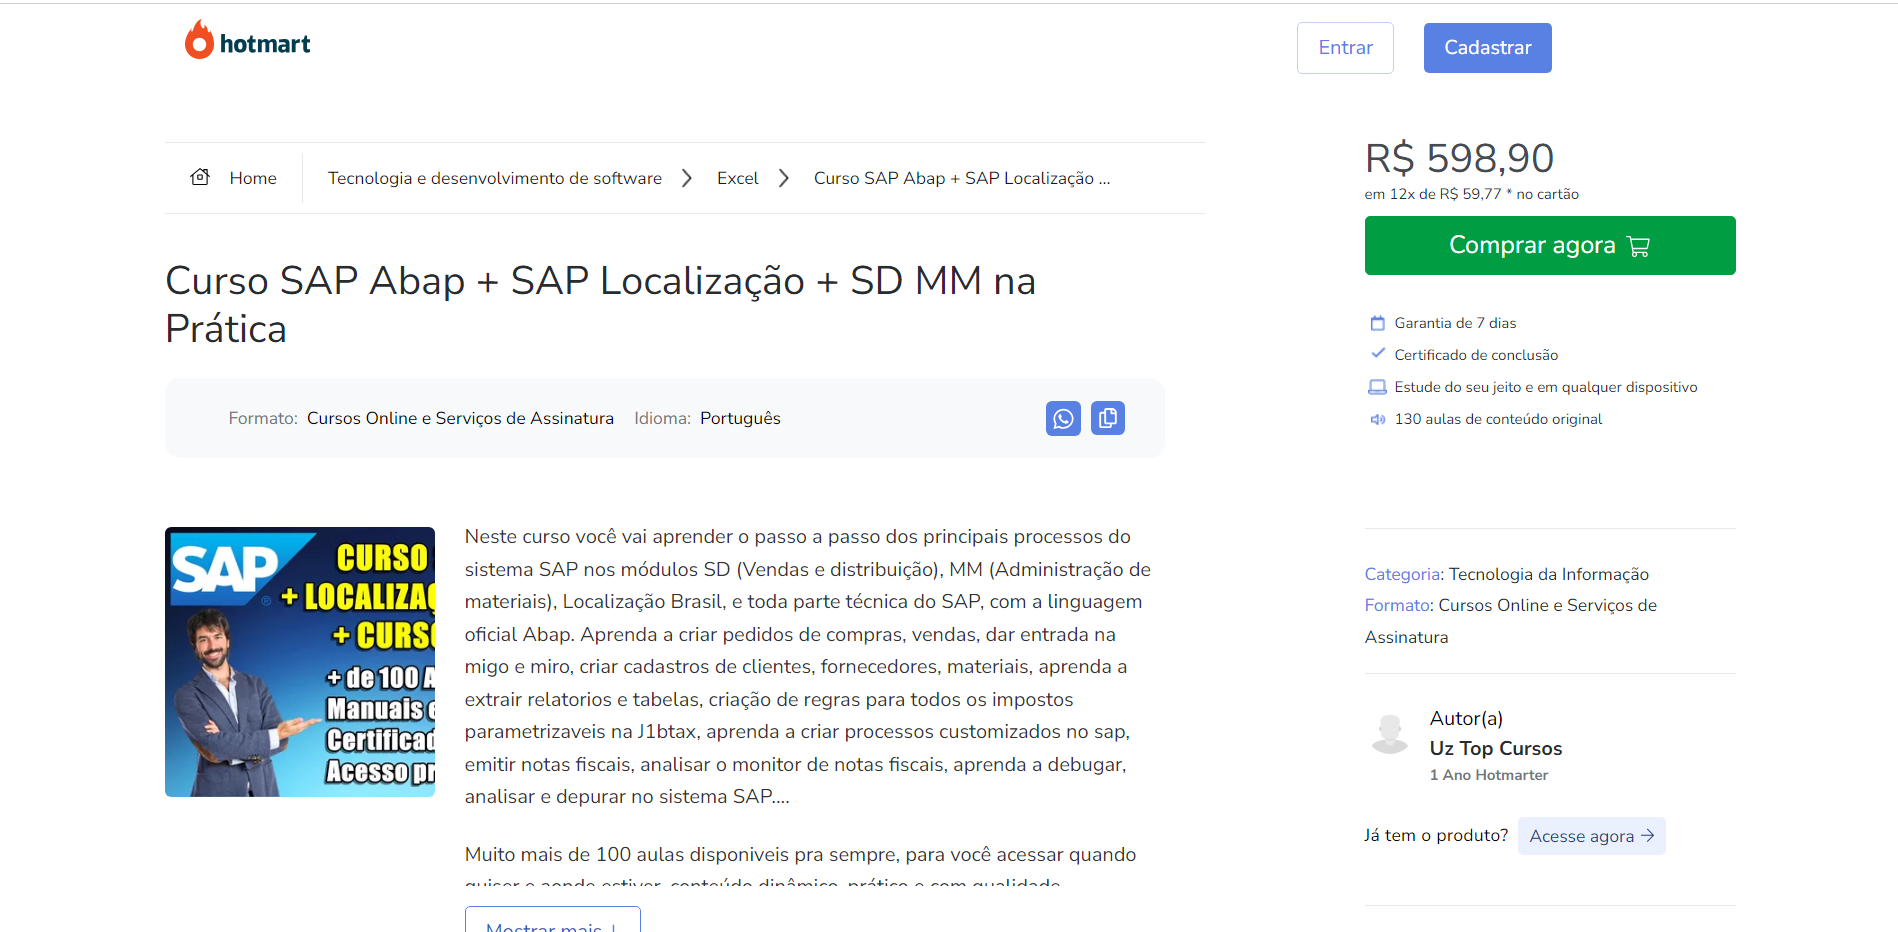 Curso SAP Abap + SAP Localização + SD MM na Prática